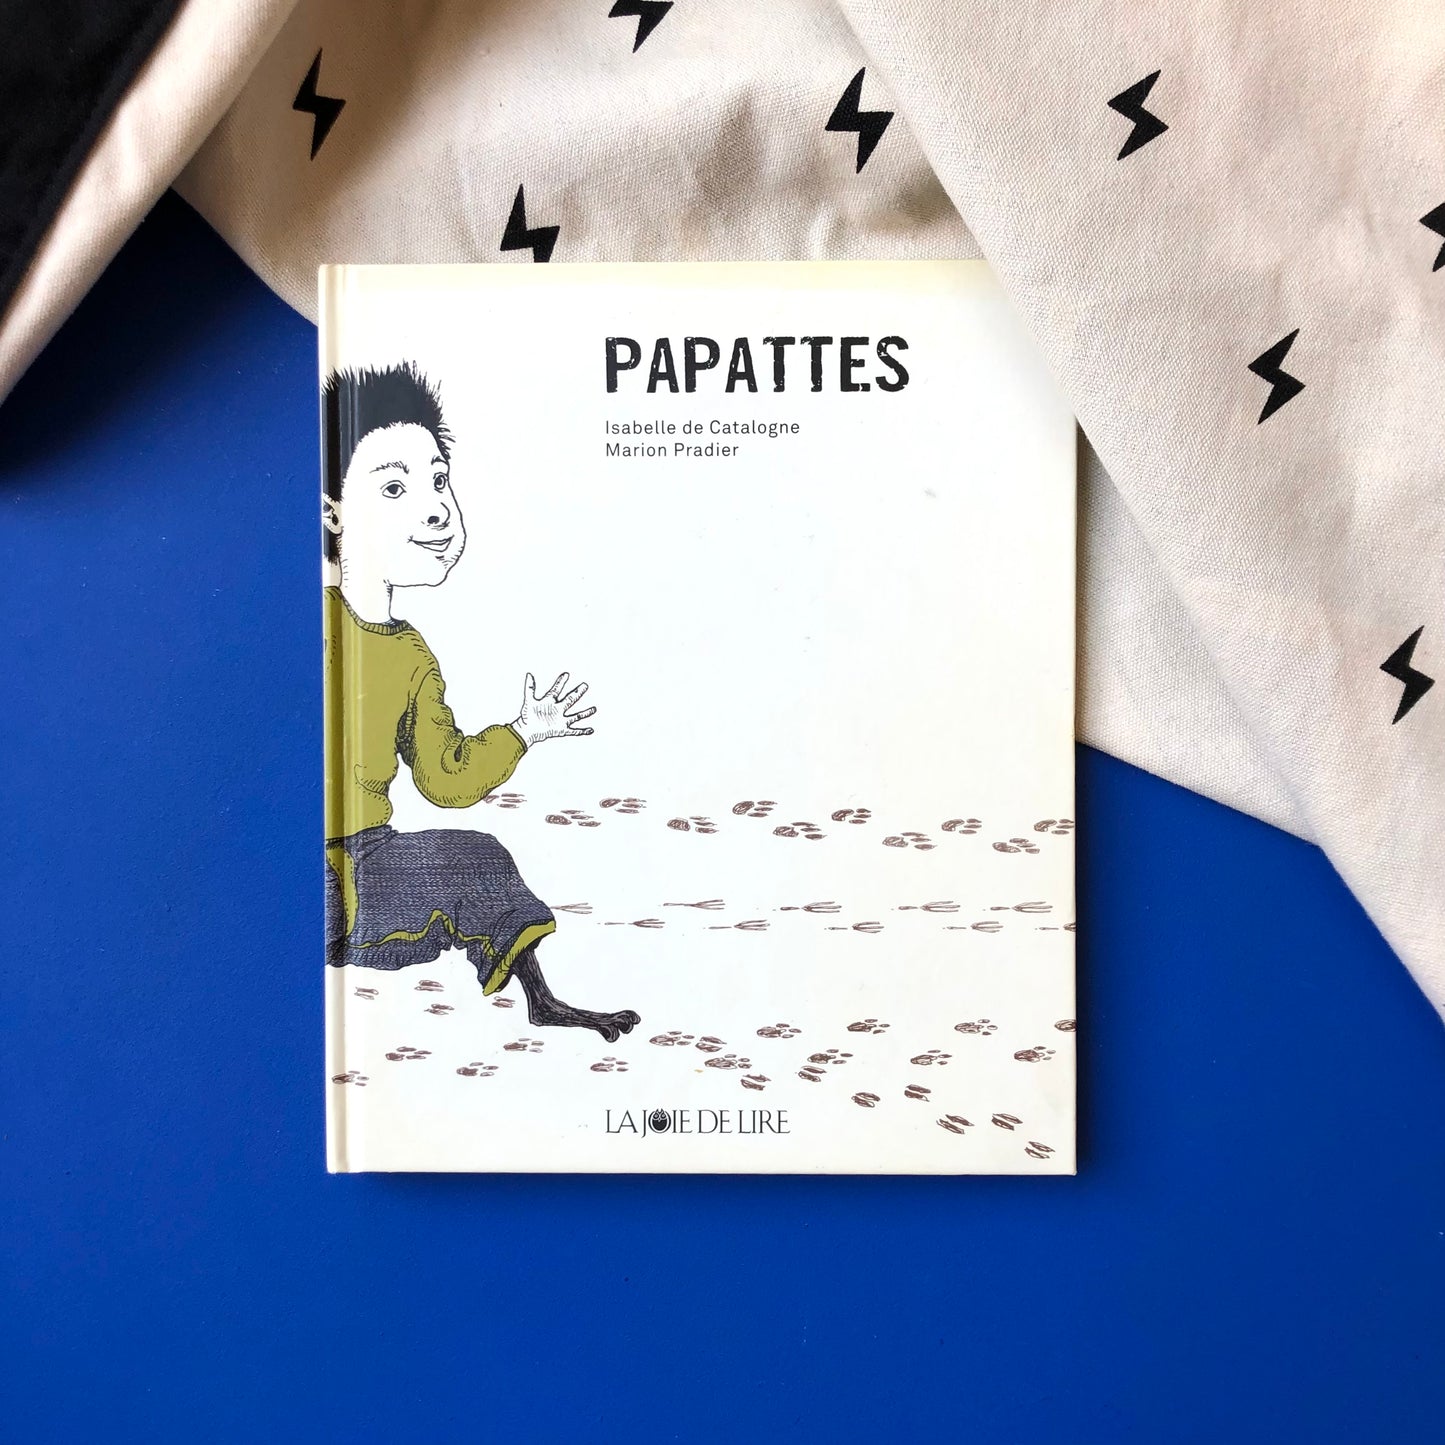 Papattes - Isabelle de Catalogne & Marion Pradier